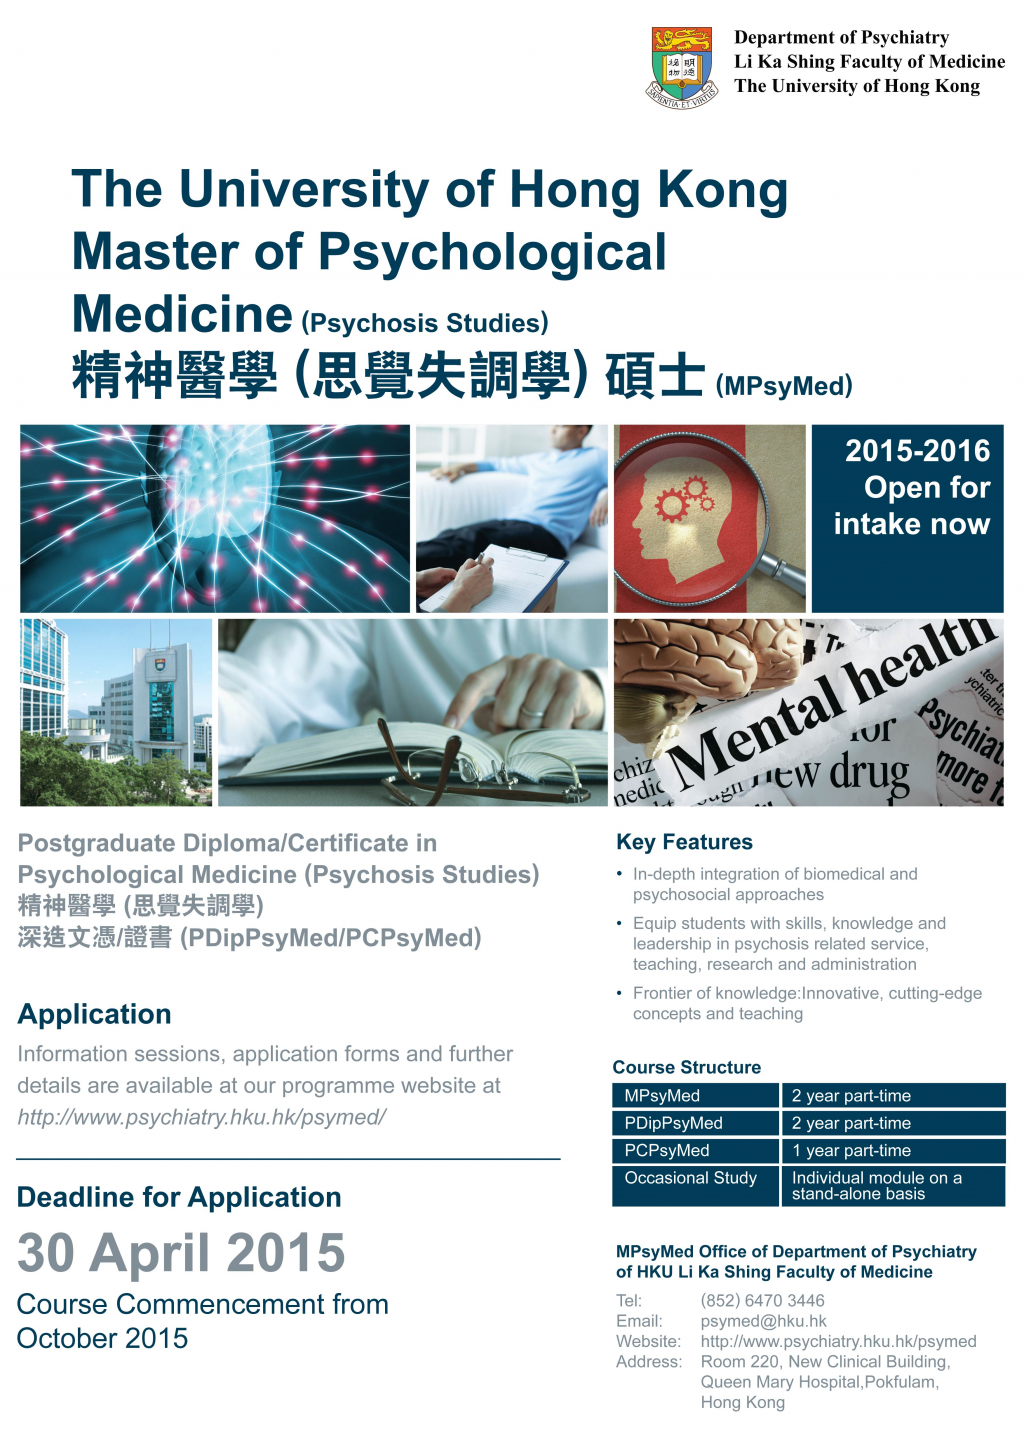 Master, Postgrad Dip & Cert in Psychological Medicine open for enrollment